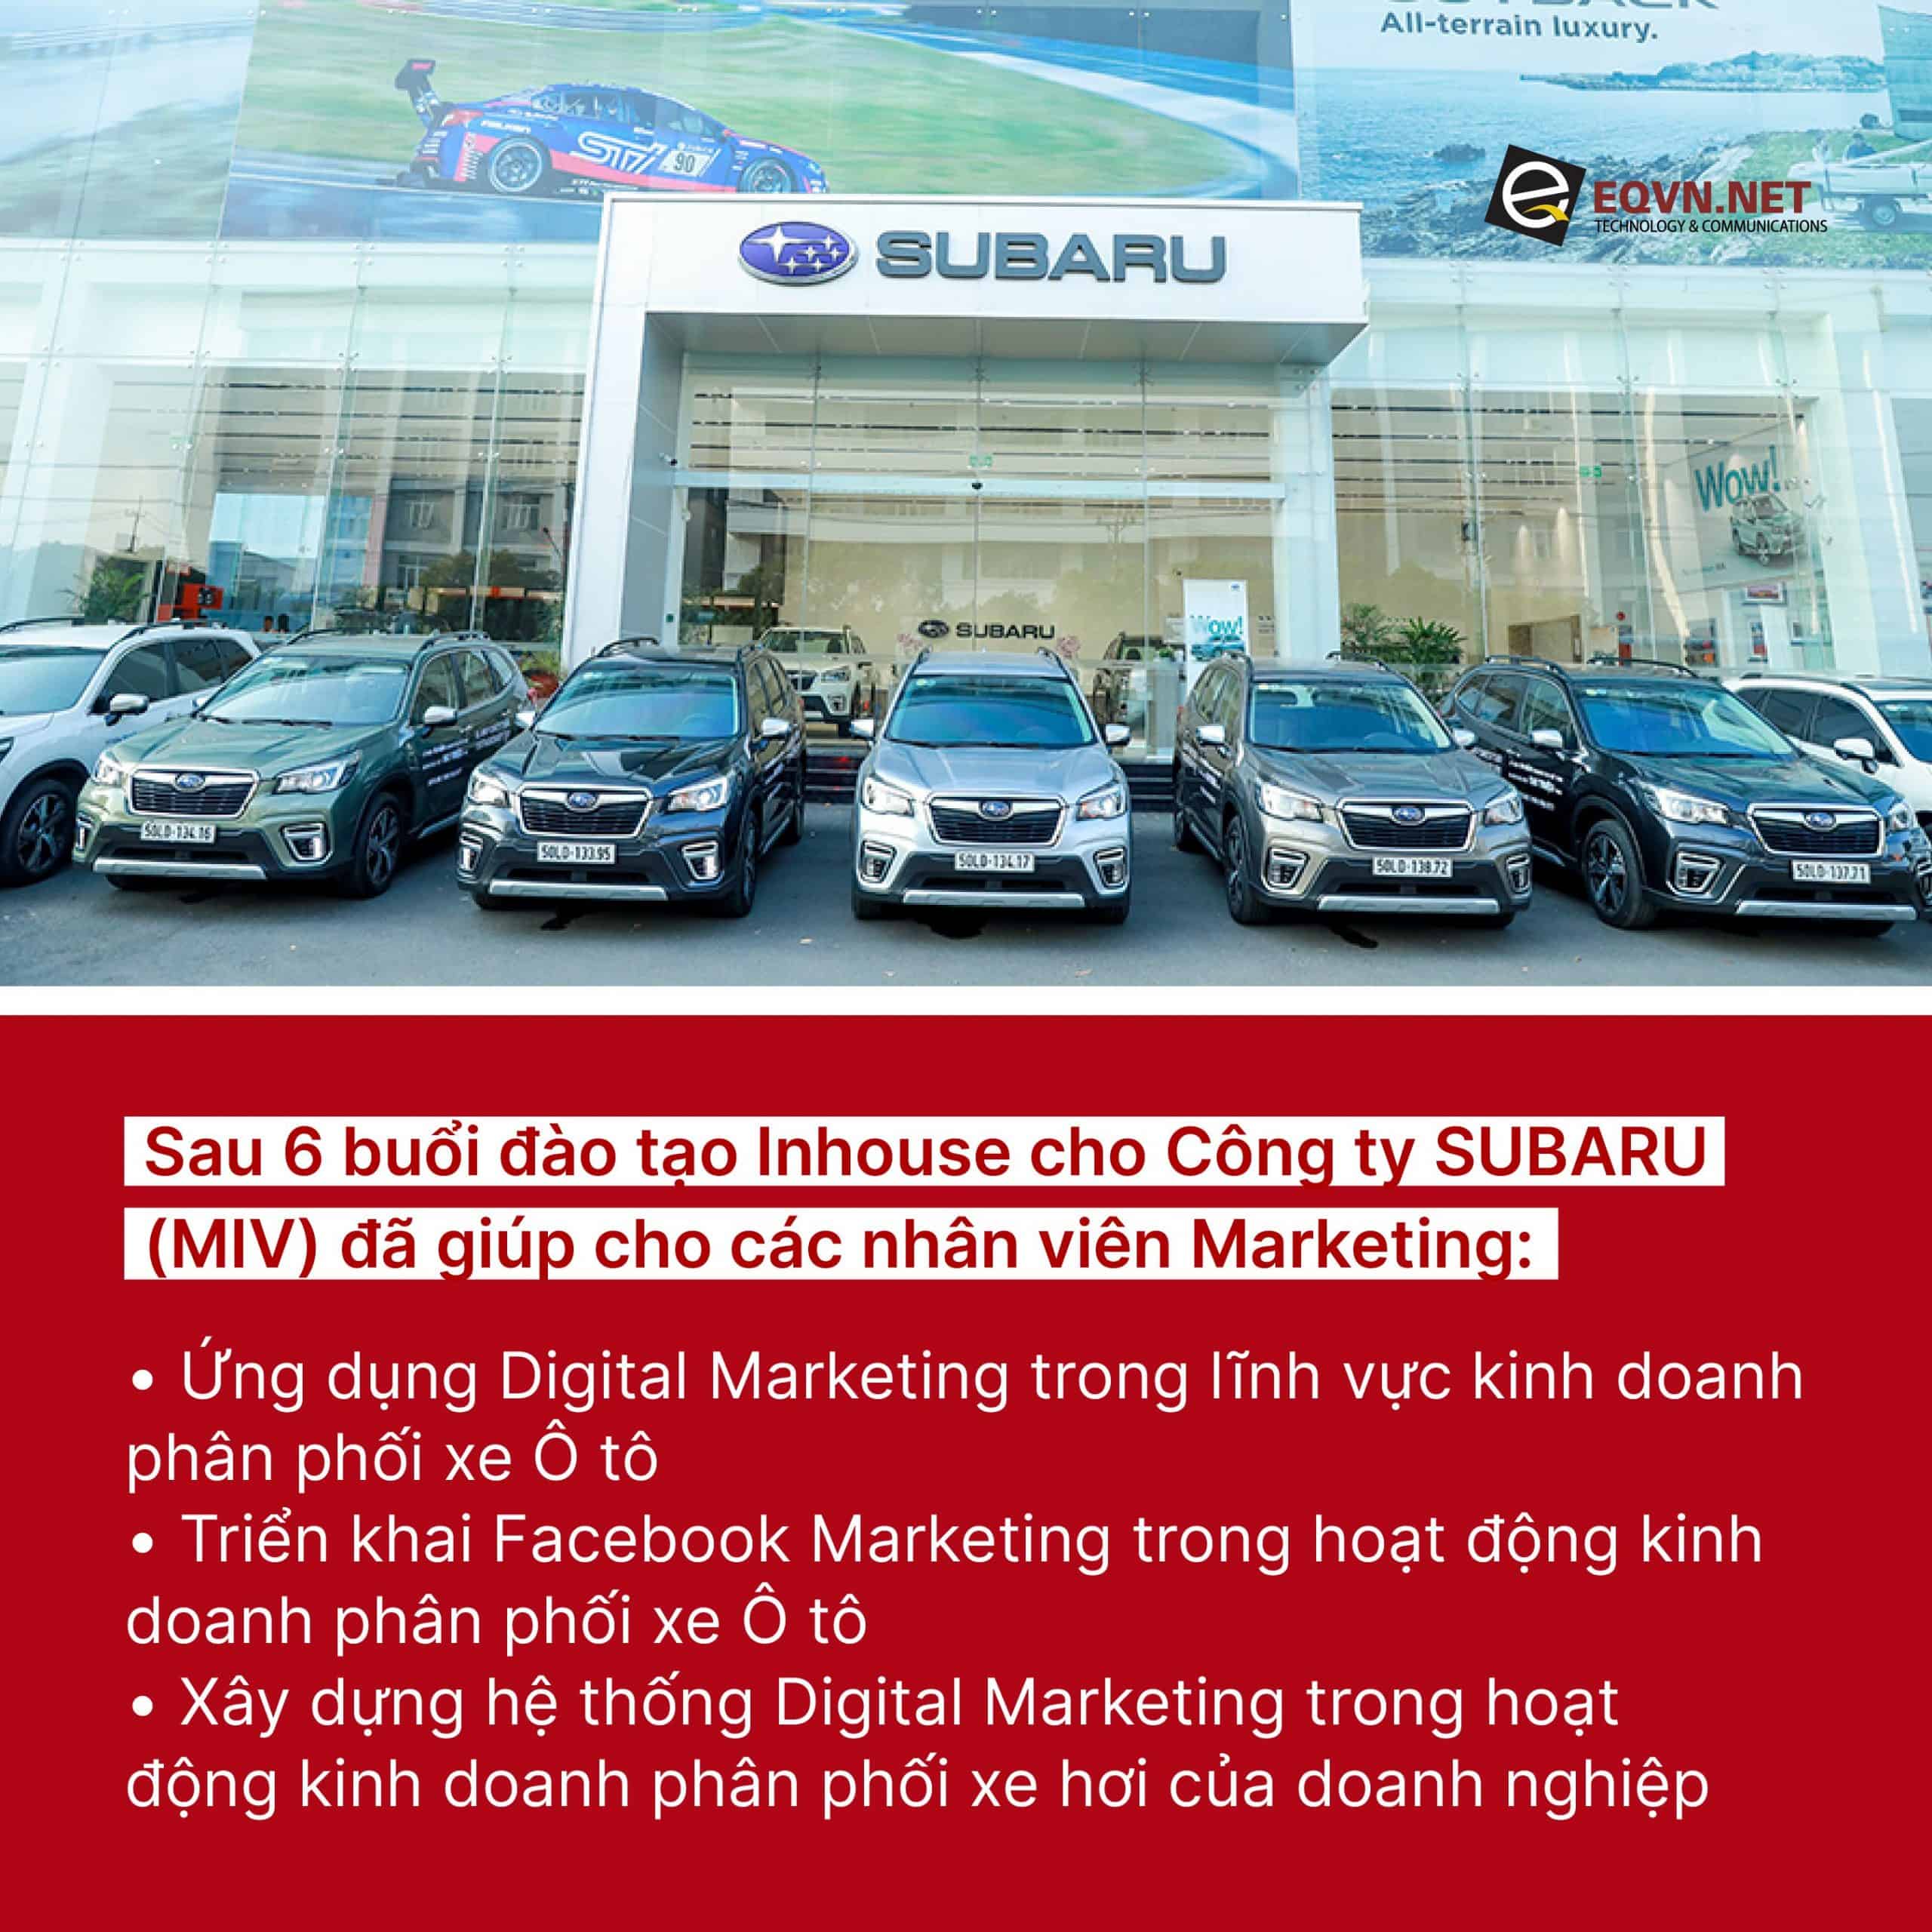 Ứng dụng Digital Marketing trong linh vực kinh doanh phân phối xe Ô tô